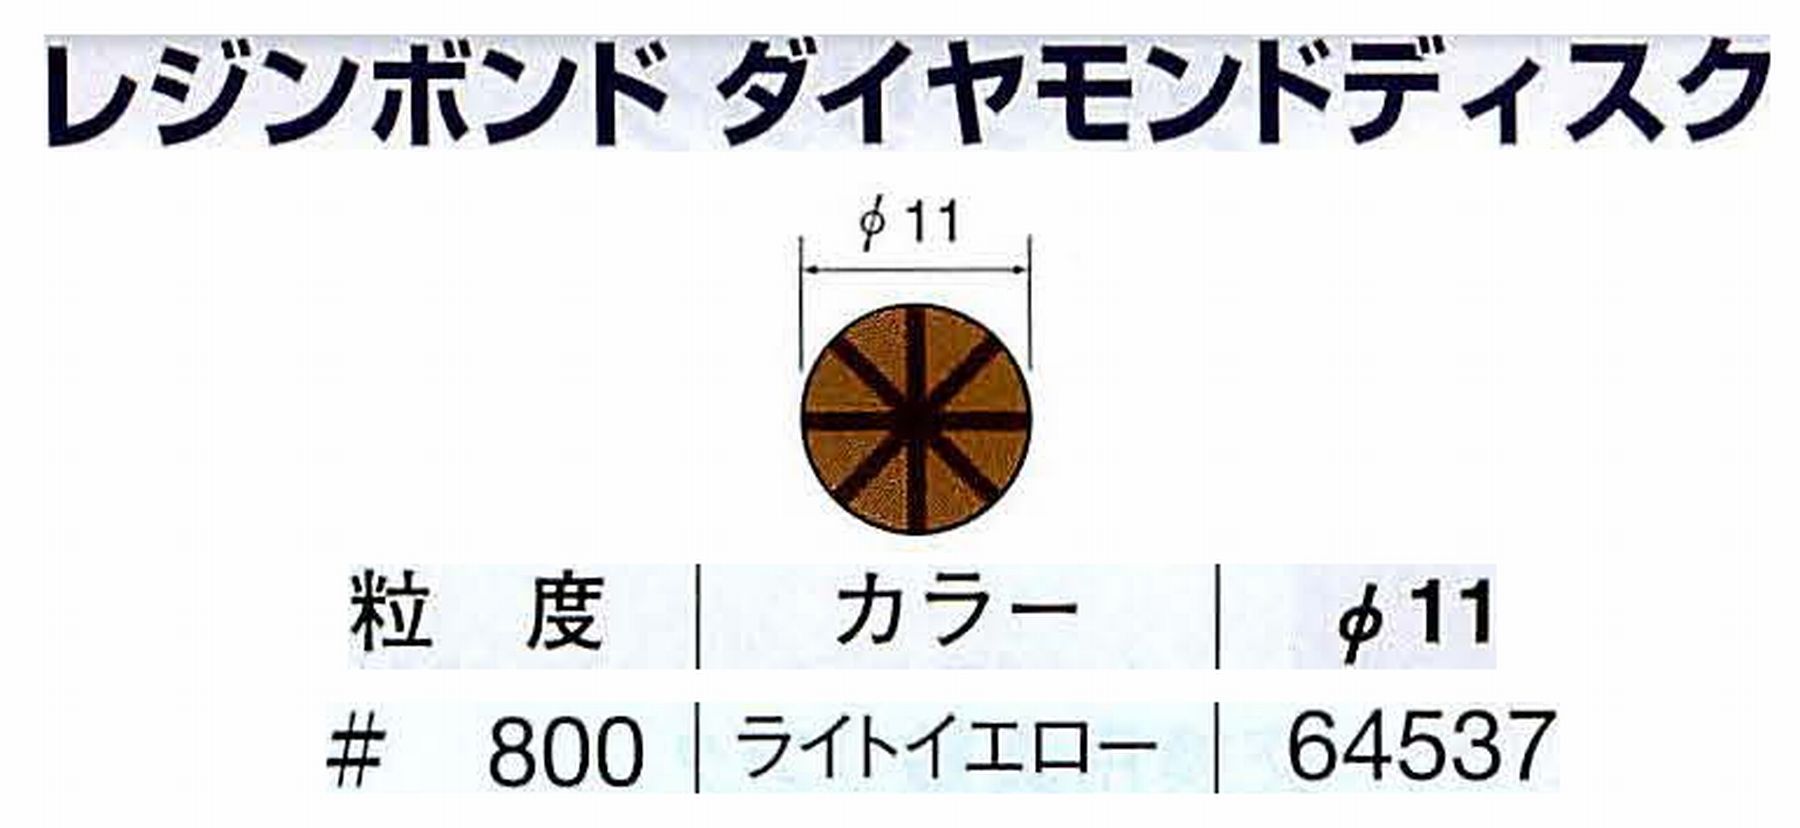 ナカニシ/NAKANISHI アングルグラインダ(電動・エアー) アングルアタッチメント専用工具 レジンボンド ダイヤモンドディスク(パターンタイプ) 64537